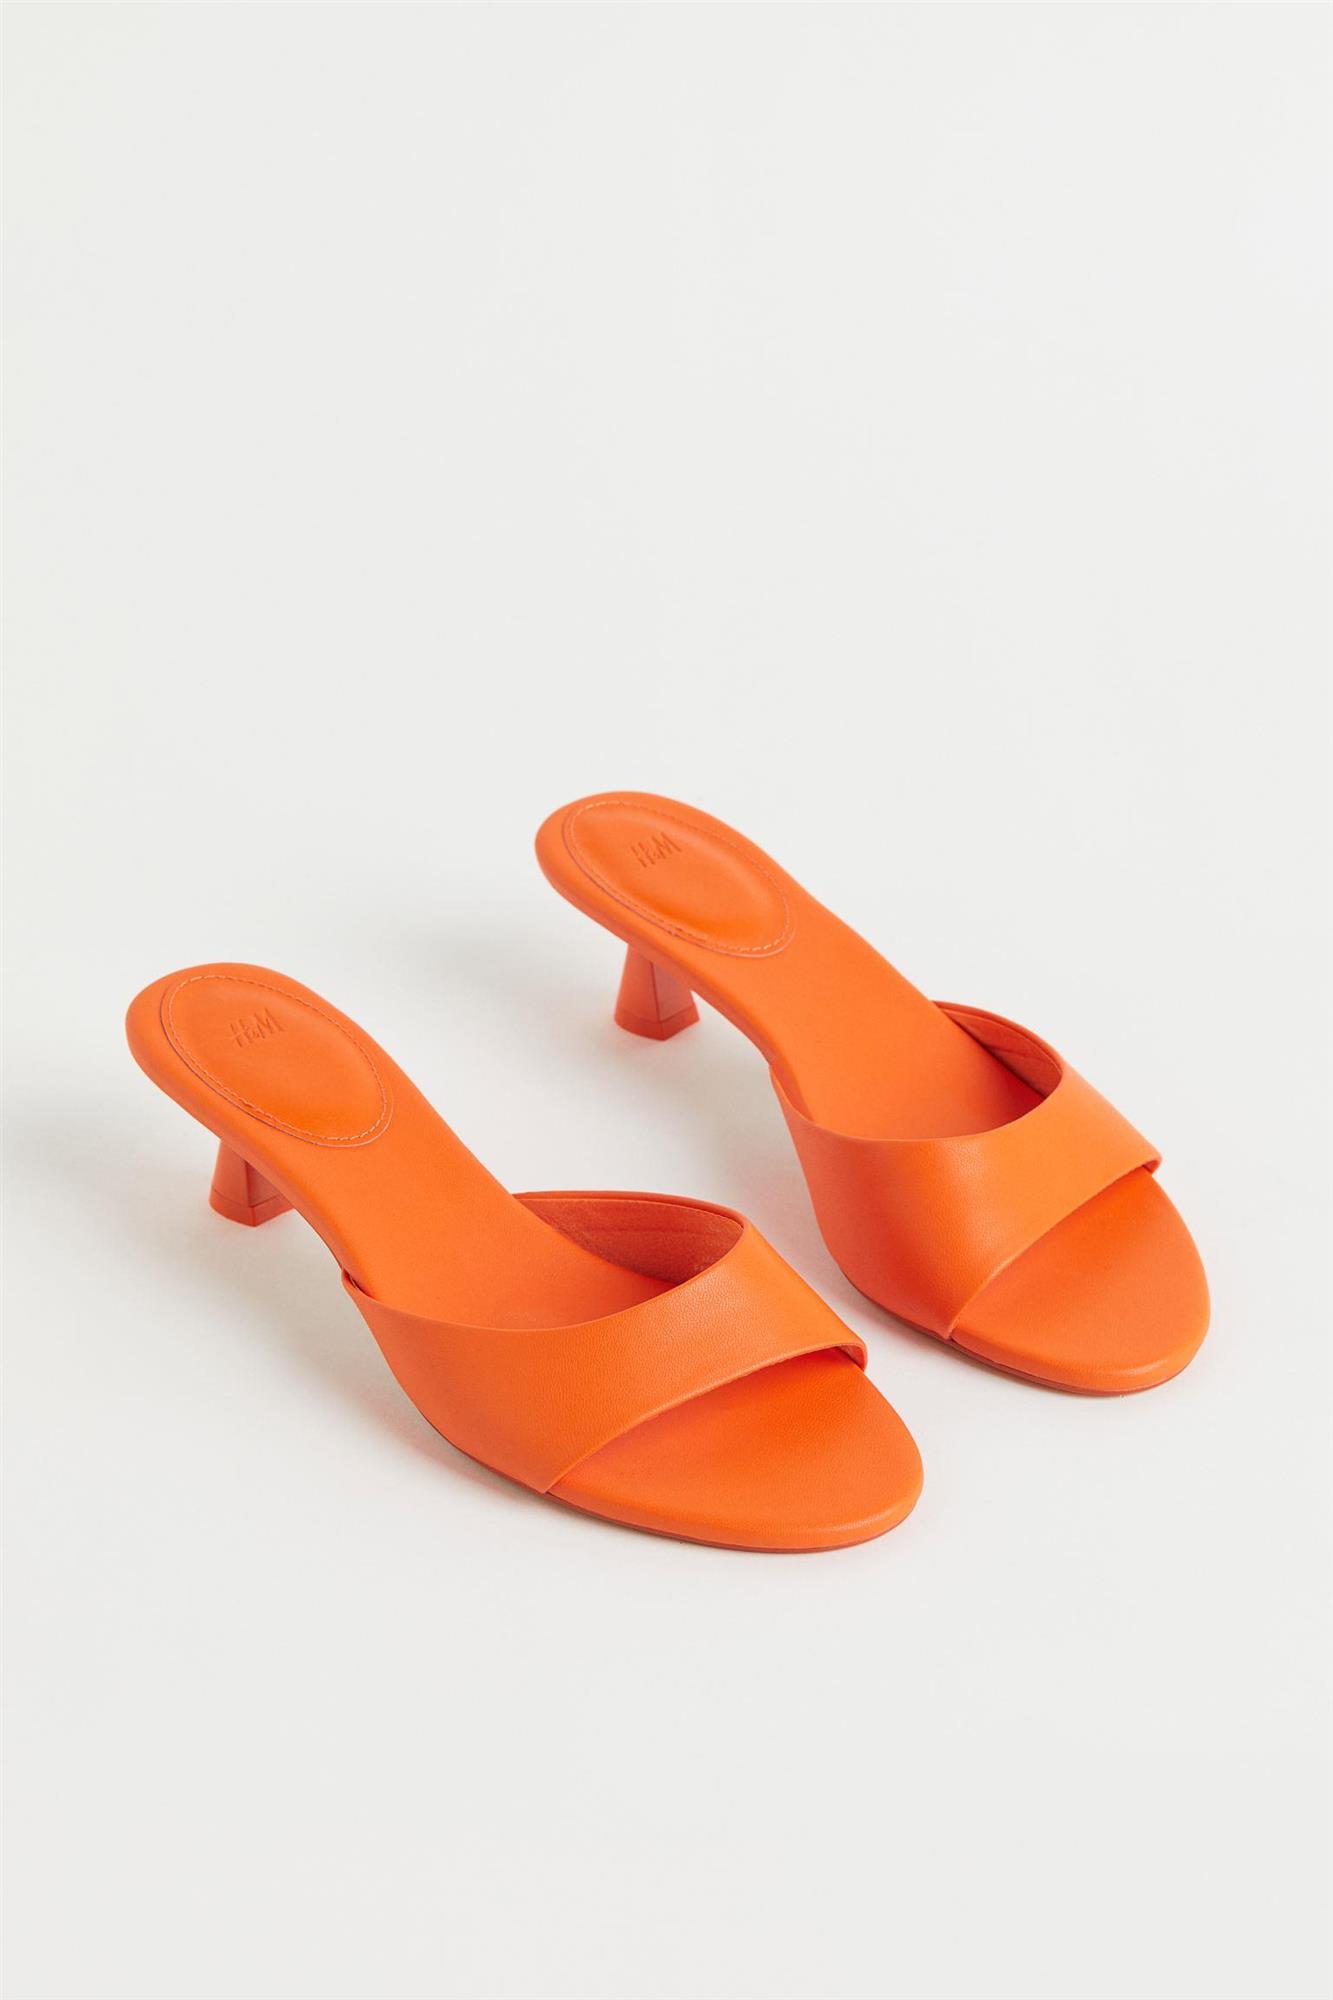 Sandalias de color naranja estilo mule de H&M